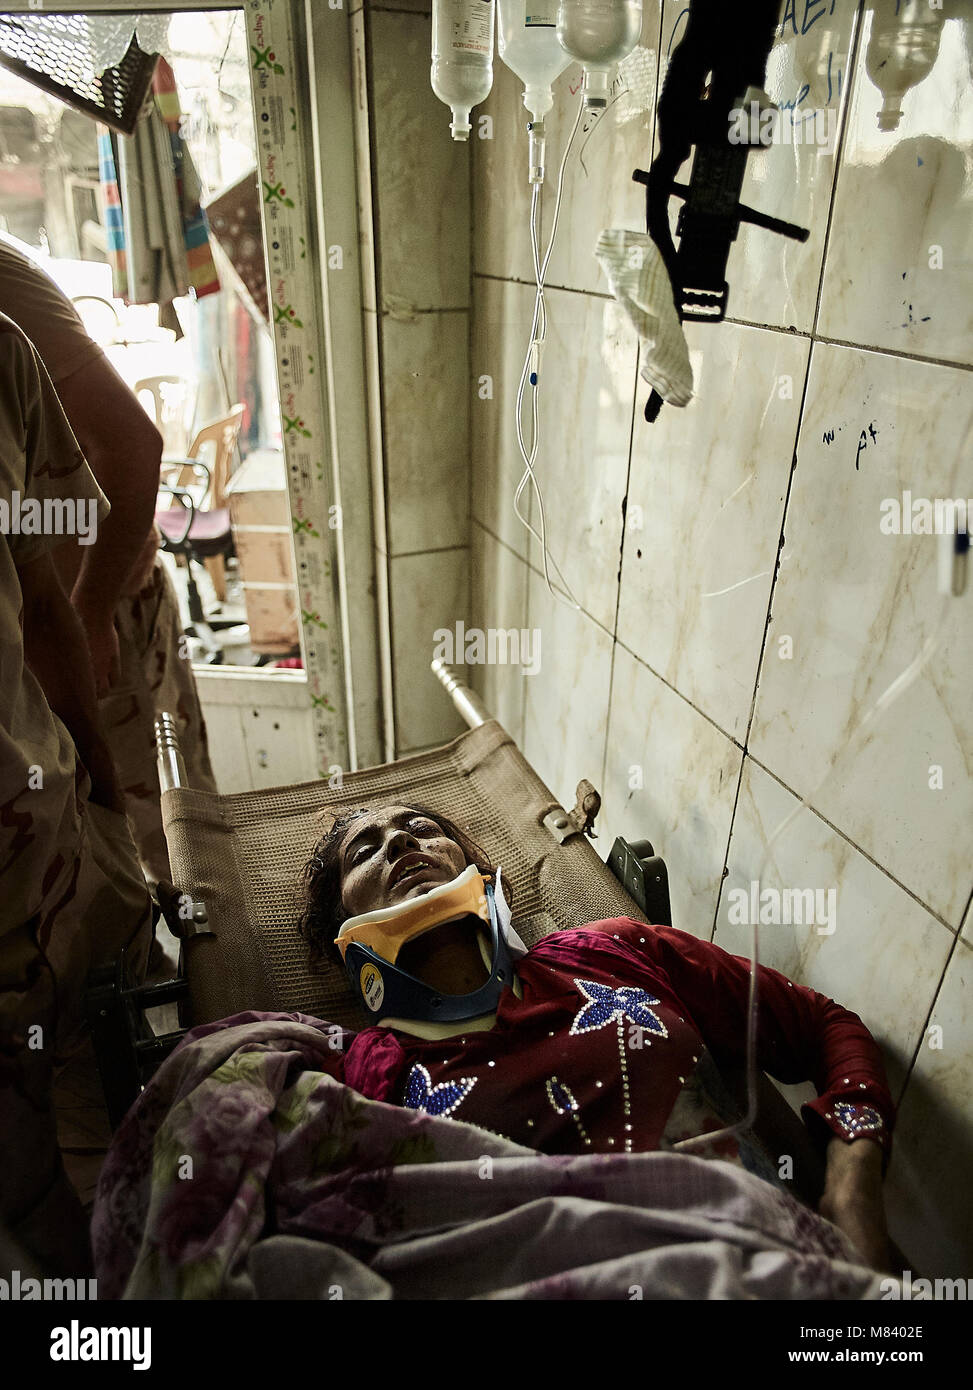 Eine Frau gewinnt bei einer frontline Feldlazarett nach Verbrennungen von einem artilleriebeschuss. Die Stadt Mosul im Nordirak hat unter islamischen Staat militanten wurde für 3 Jahre, seit Juni 2014. Im Juli 2017 die Streitkräfte der Koalition geführt von der irakischen Armee hat endlich befreit die Stadt aus der Hand von Terroristen. Stockfoto